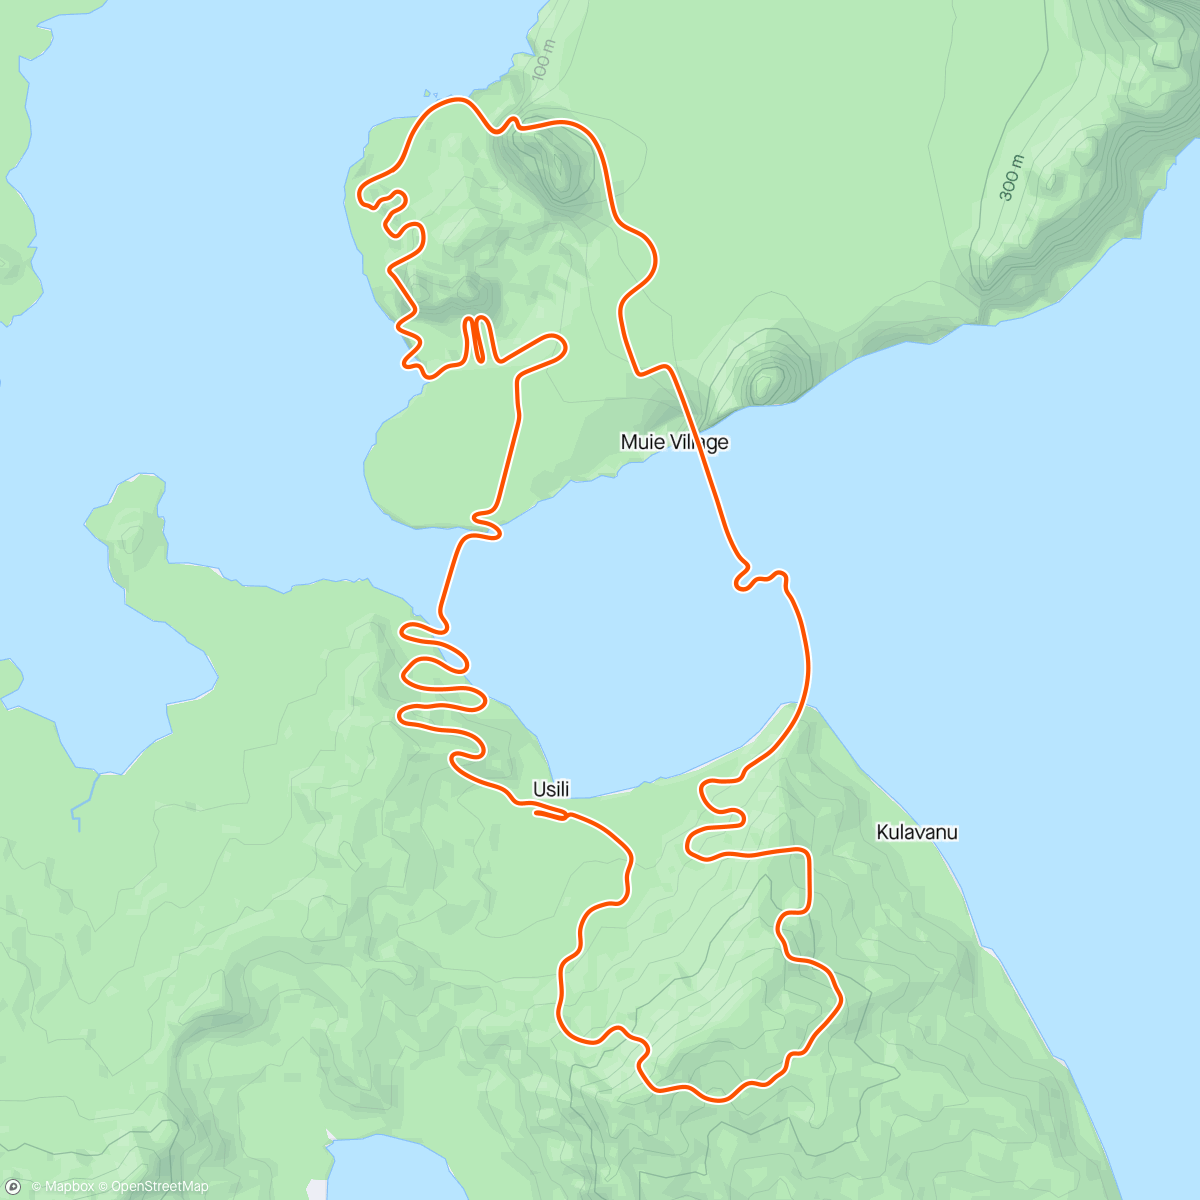 「Zwift - Mountain Route in Watopia
Old man climbing - 21 Min. All out
366 Watt bei 76 kg - 4,82 w/kg」活動的地圖